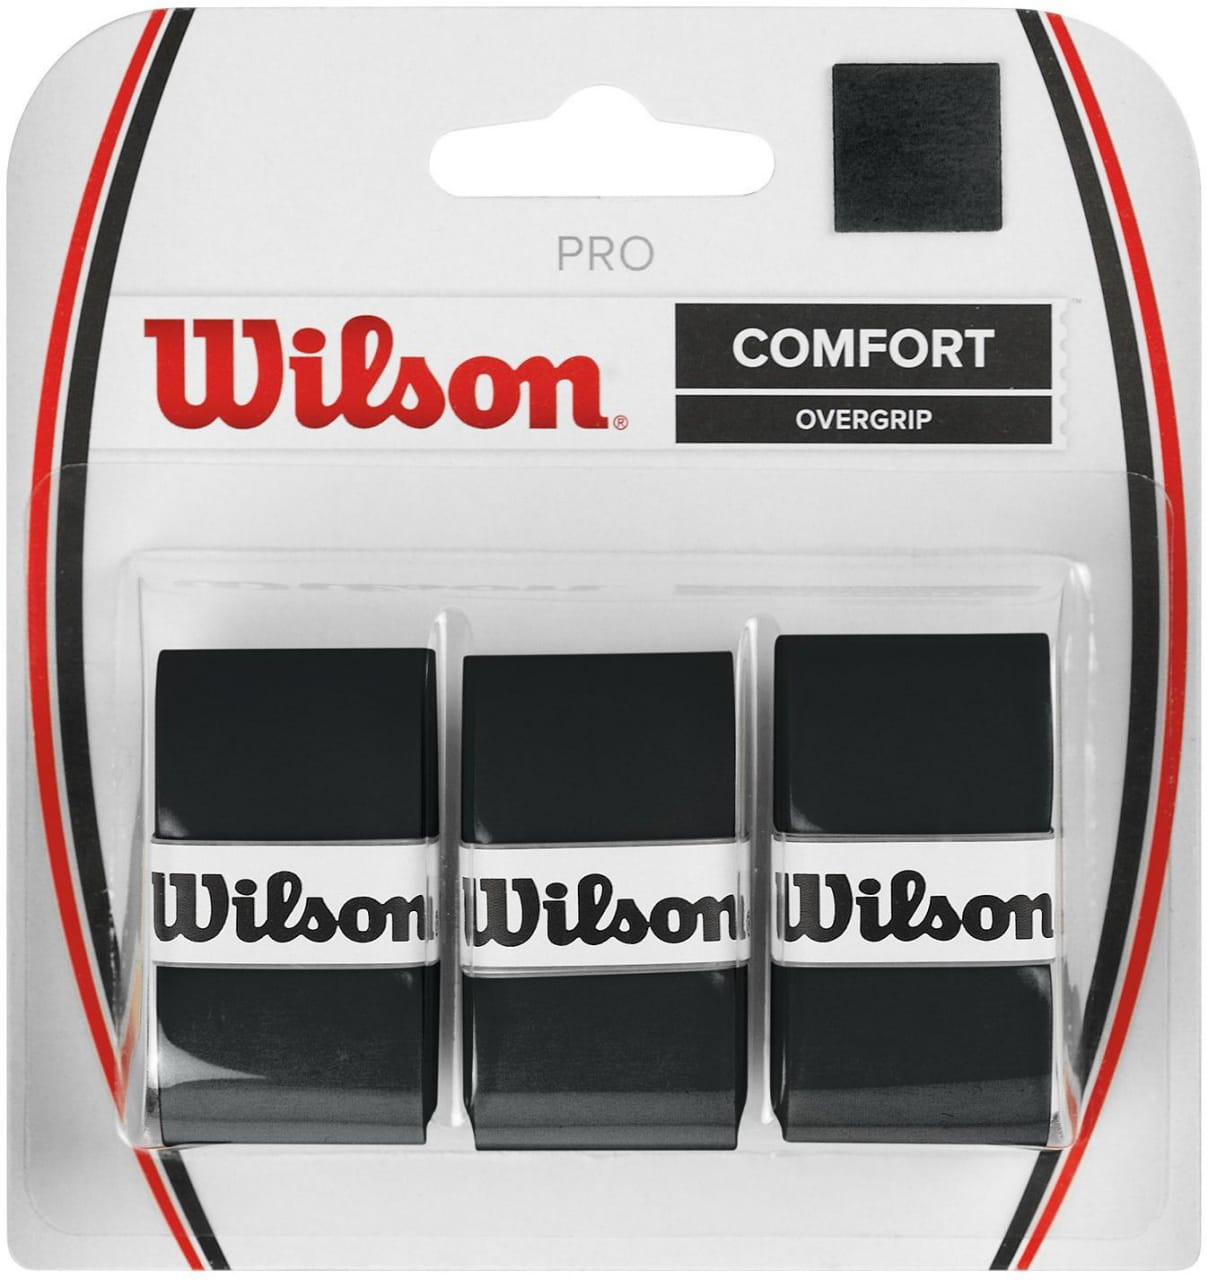 Tenisz csomagolópapír Wilson Pro Overgrip